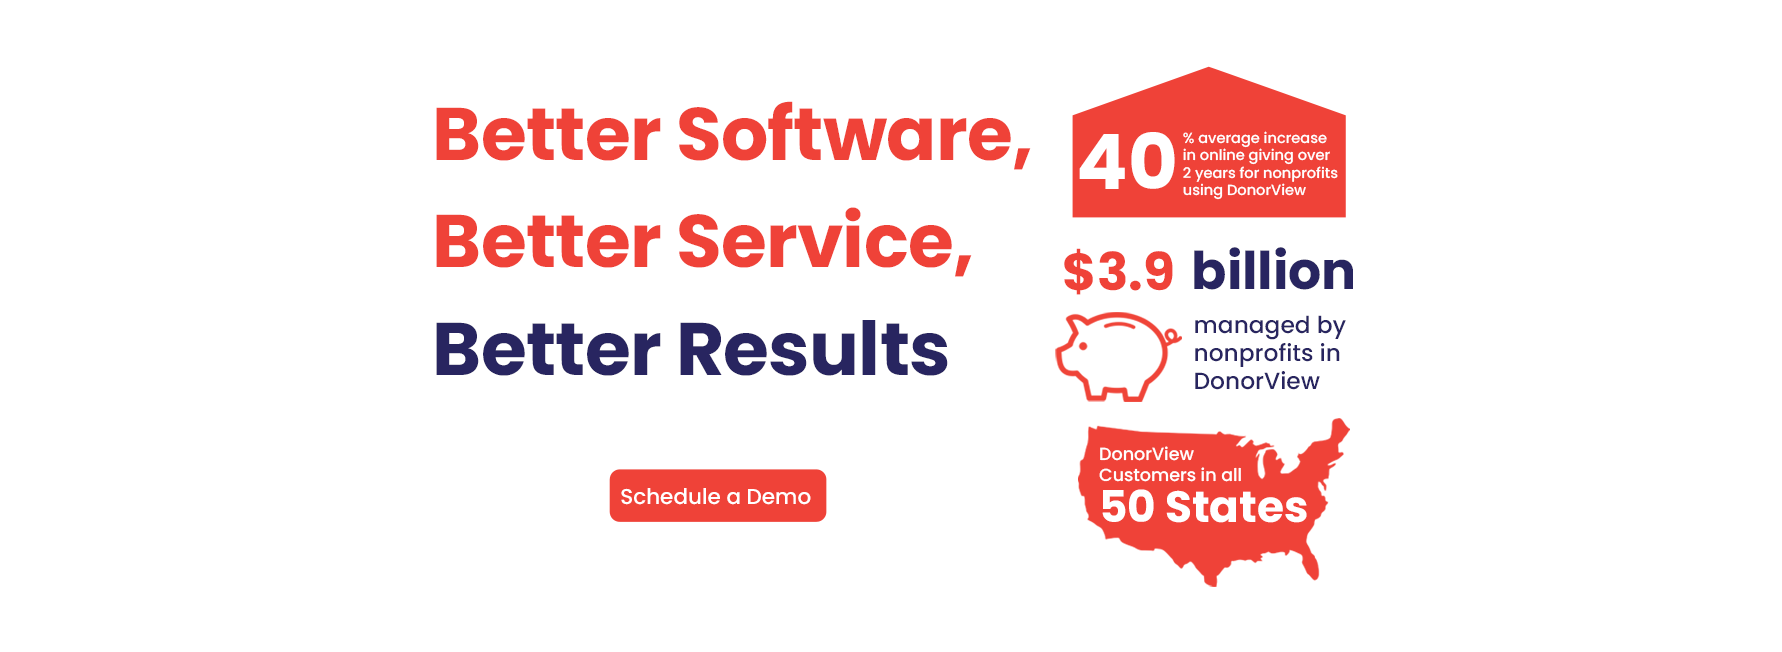 Better Software, Better Service, Better Results